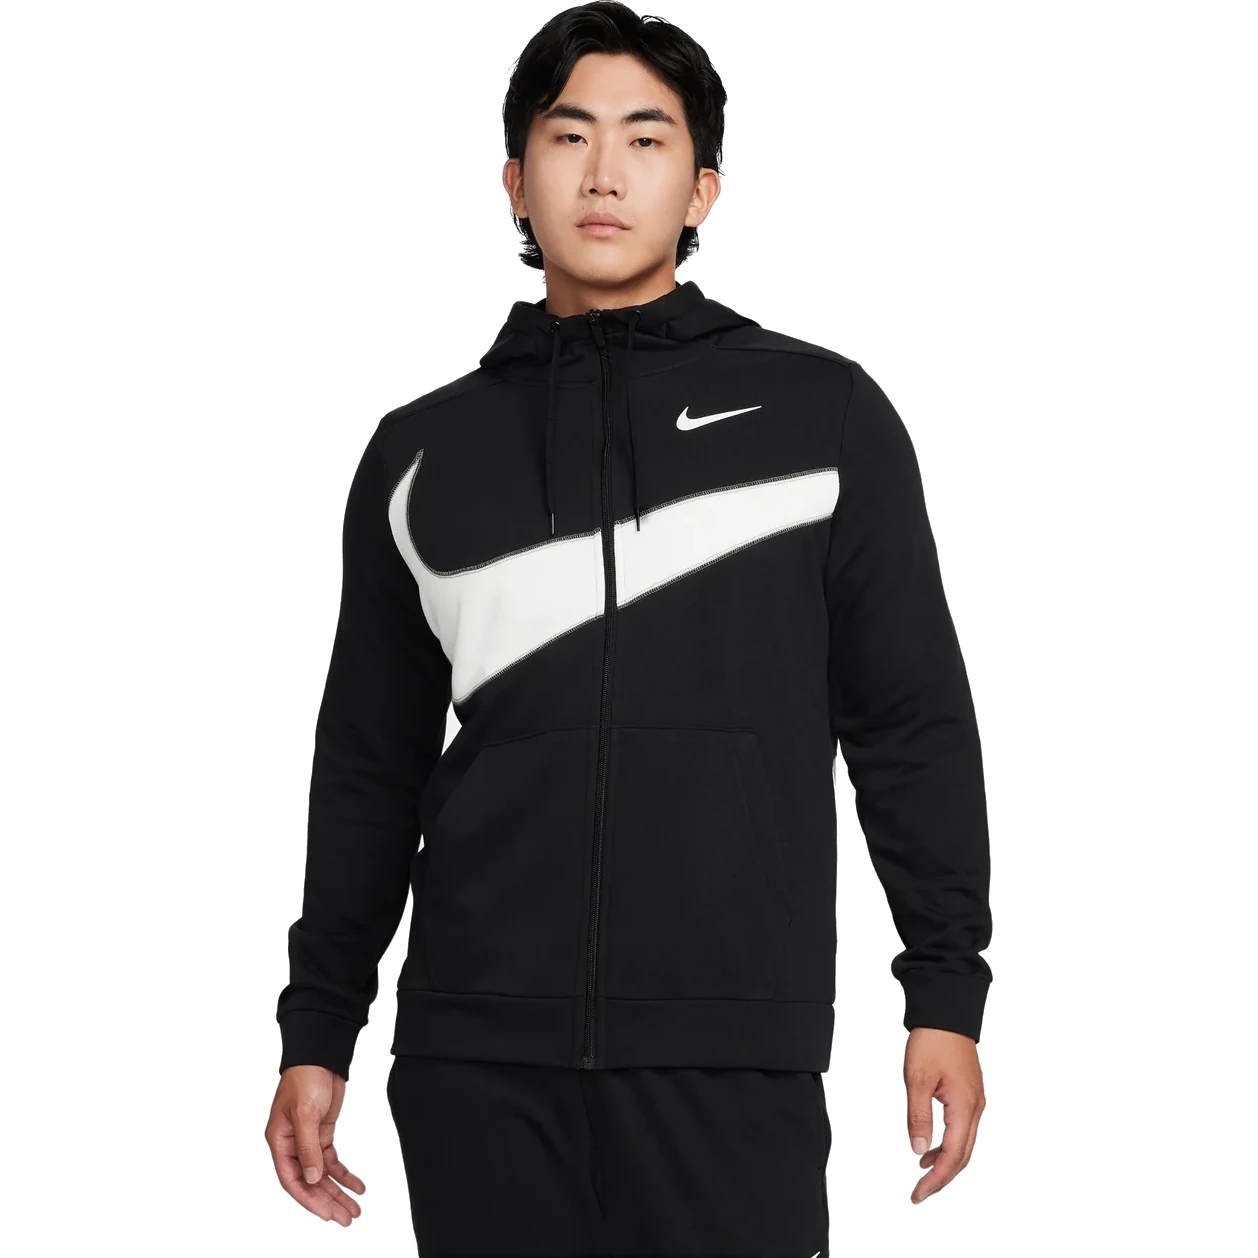 Produktbild von Nike Dri-FIT Fleece Fitness Kapuzenjacke für Herren - schwarz FB8575-010